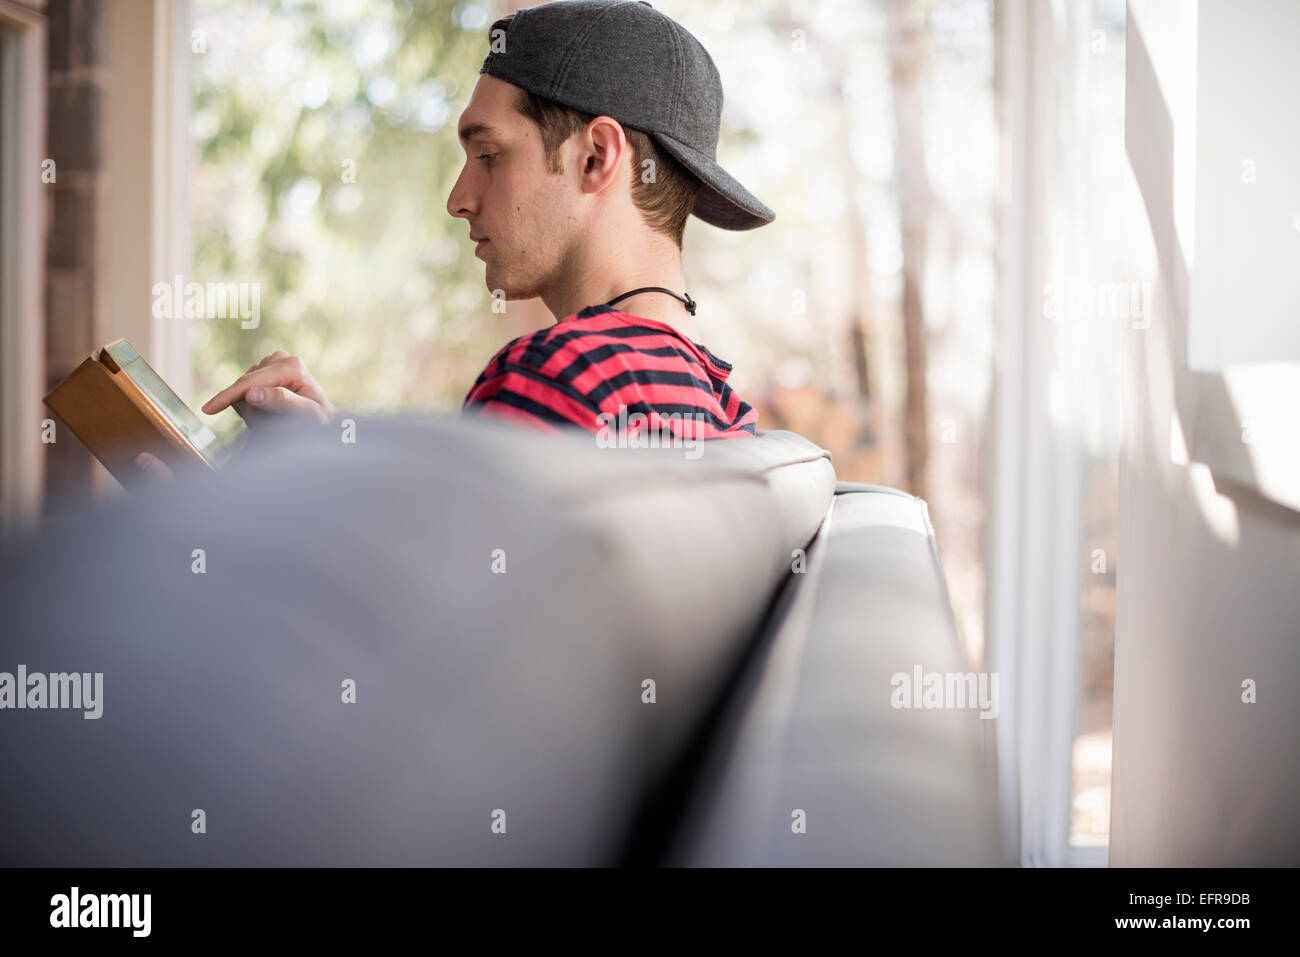 Hombre que llevaba una gorra de béisbol hacia atrás, sentado en un sofá, mirando a una tableta digital. Foto de stock